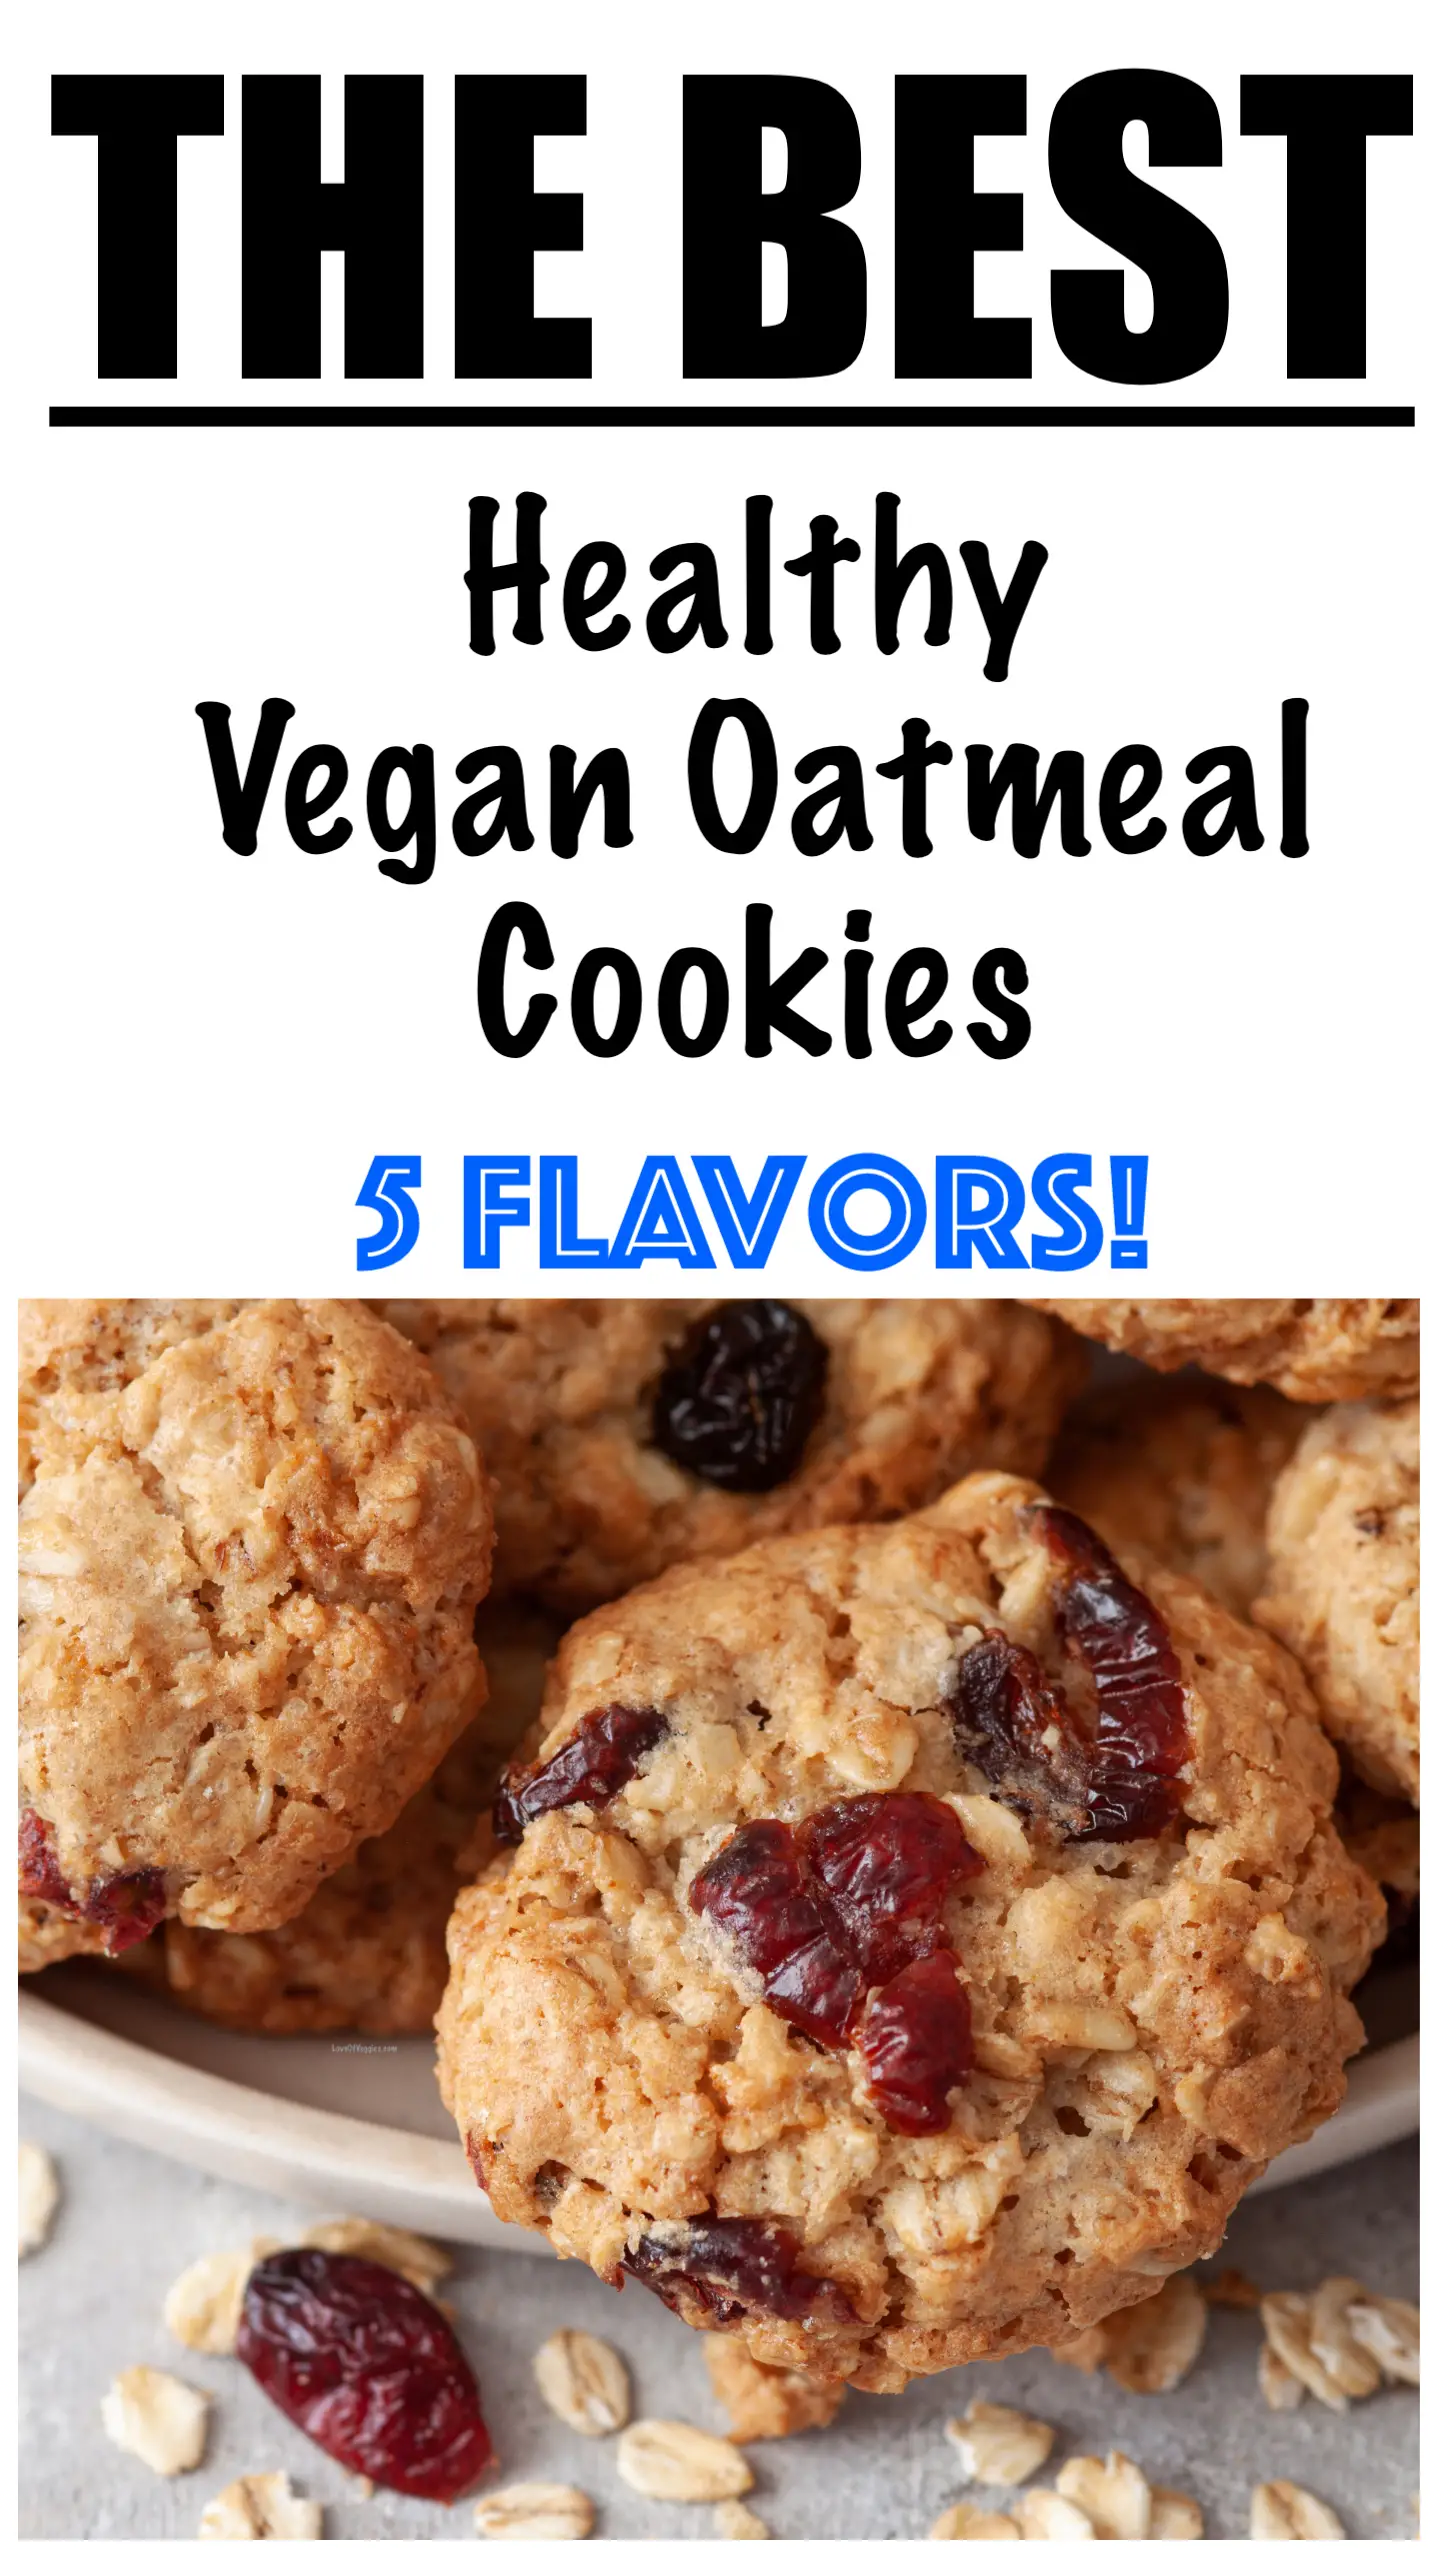 Easy Vegan Oatmeal Cookies